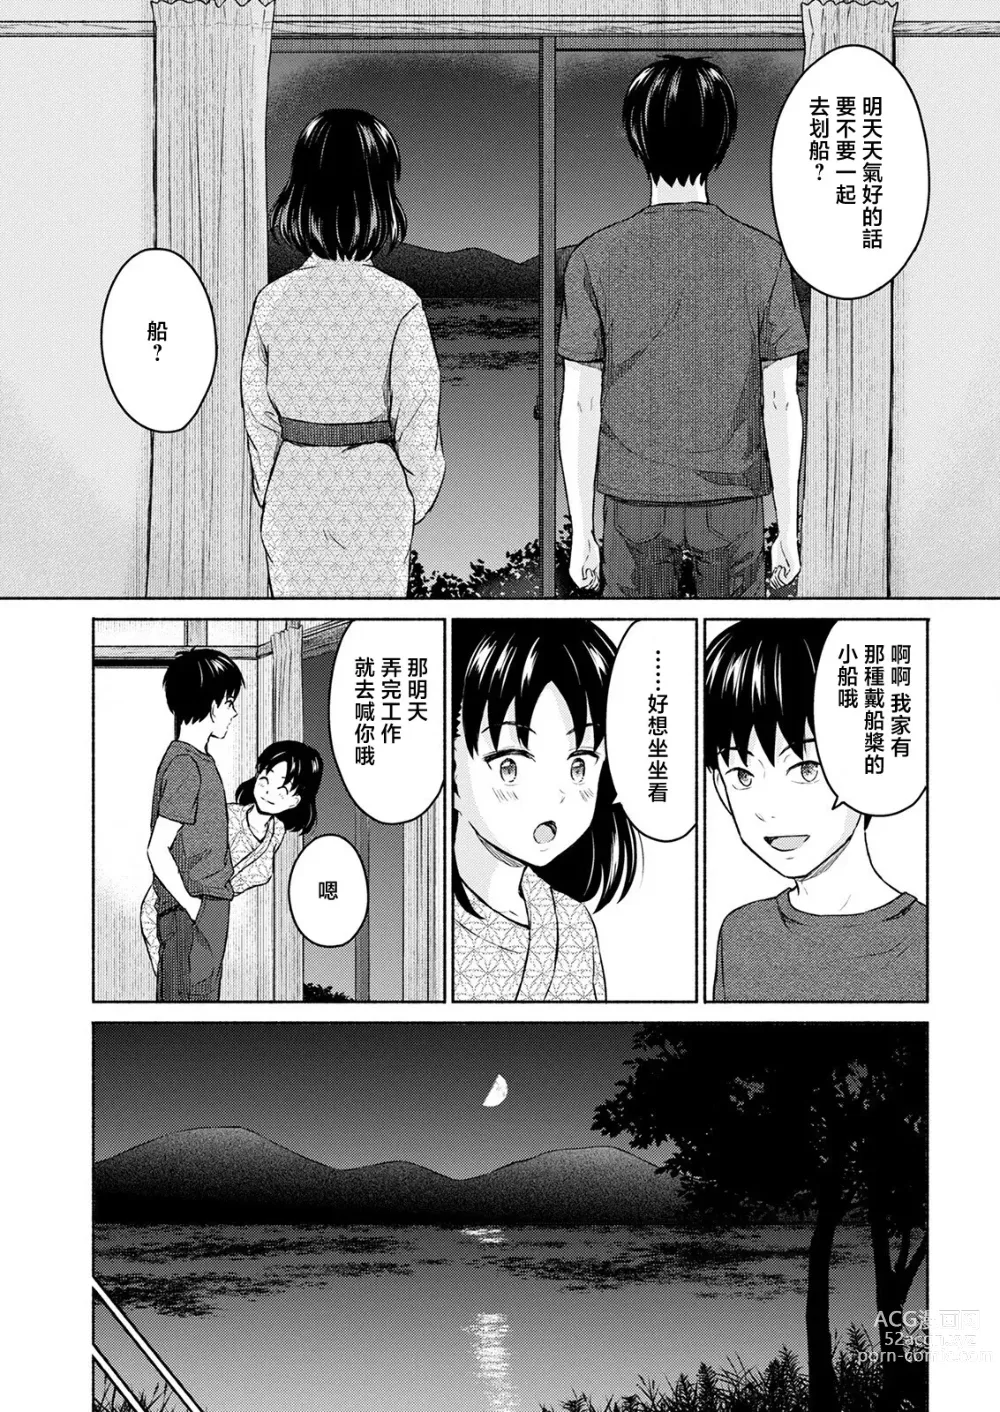 Page 21 of manga Marude Rokugatsu no Kohan o Fuku Kaze no you ni Zenpen